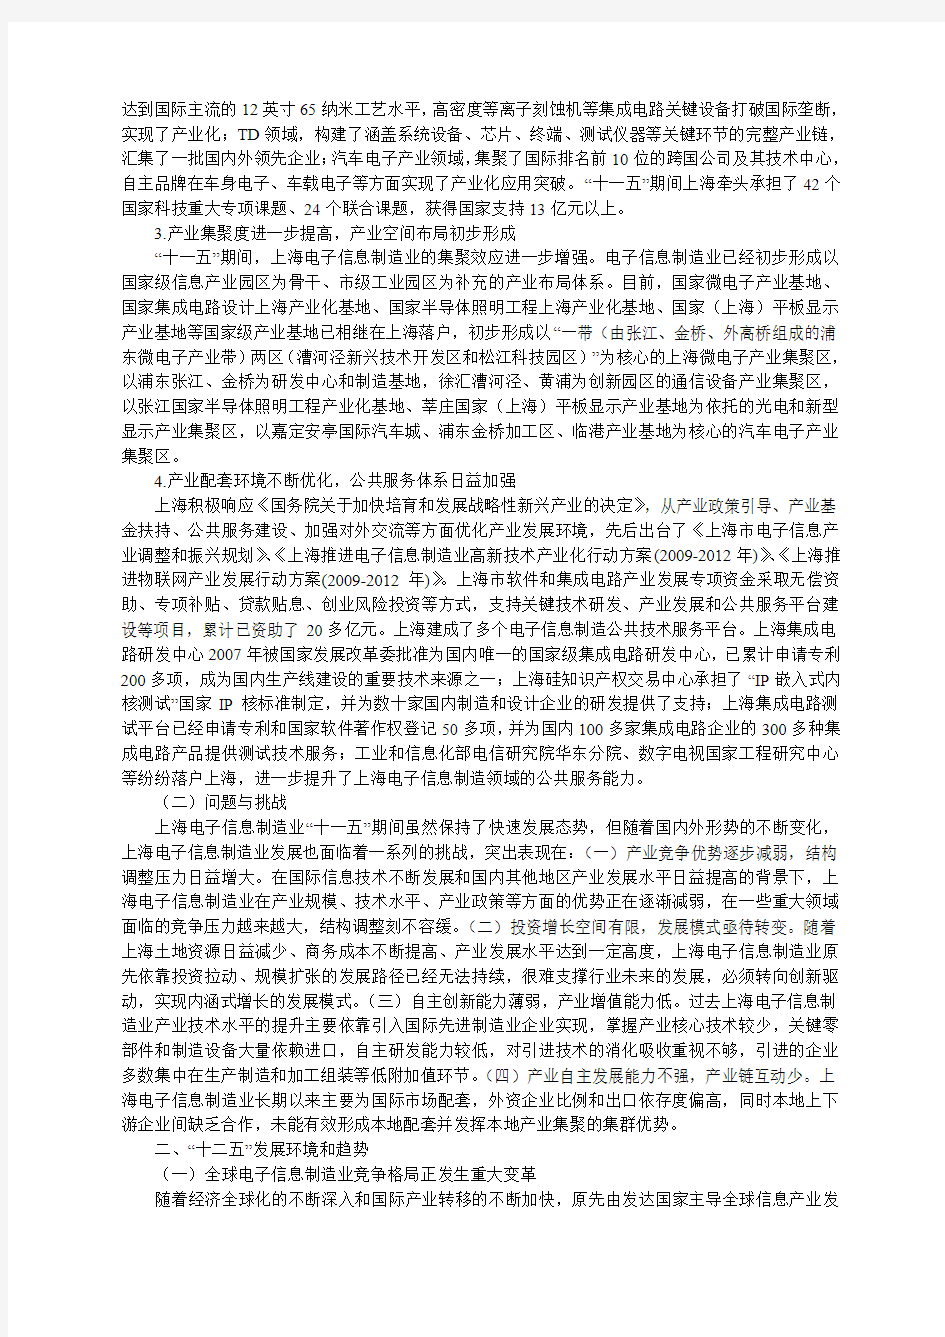 上海市电子信息制造业发展“十二五”规划